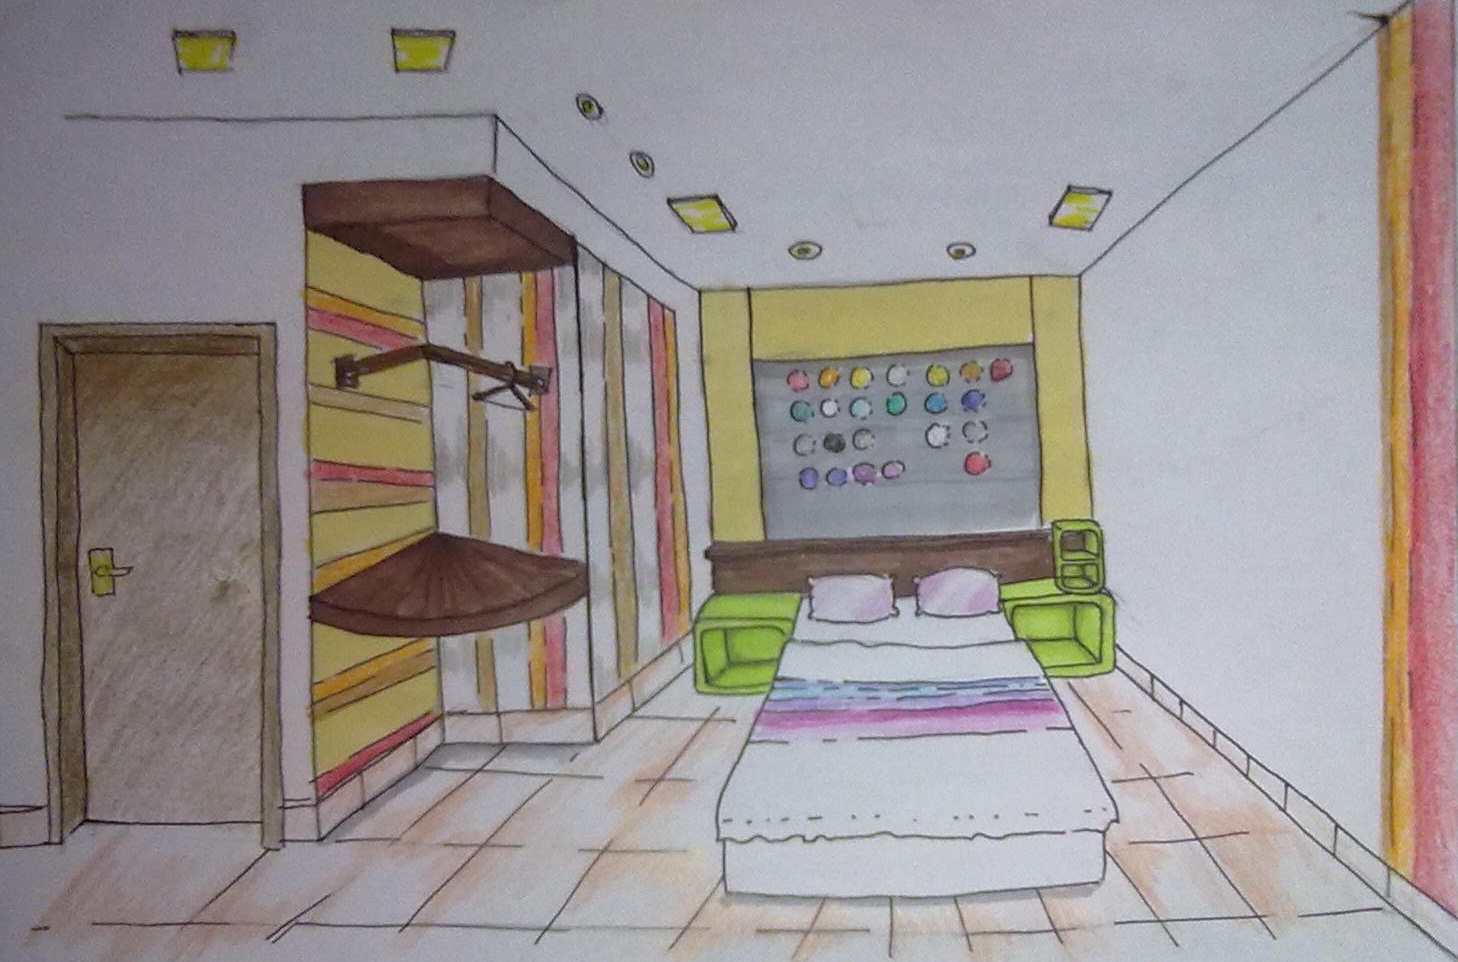  Gambar Perspektif Kamar Tidur Sederhana Interior Rumah